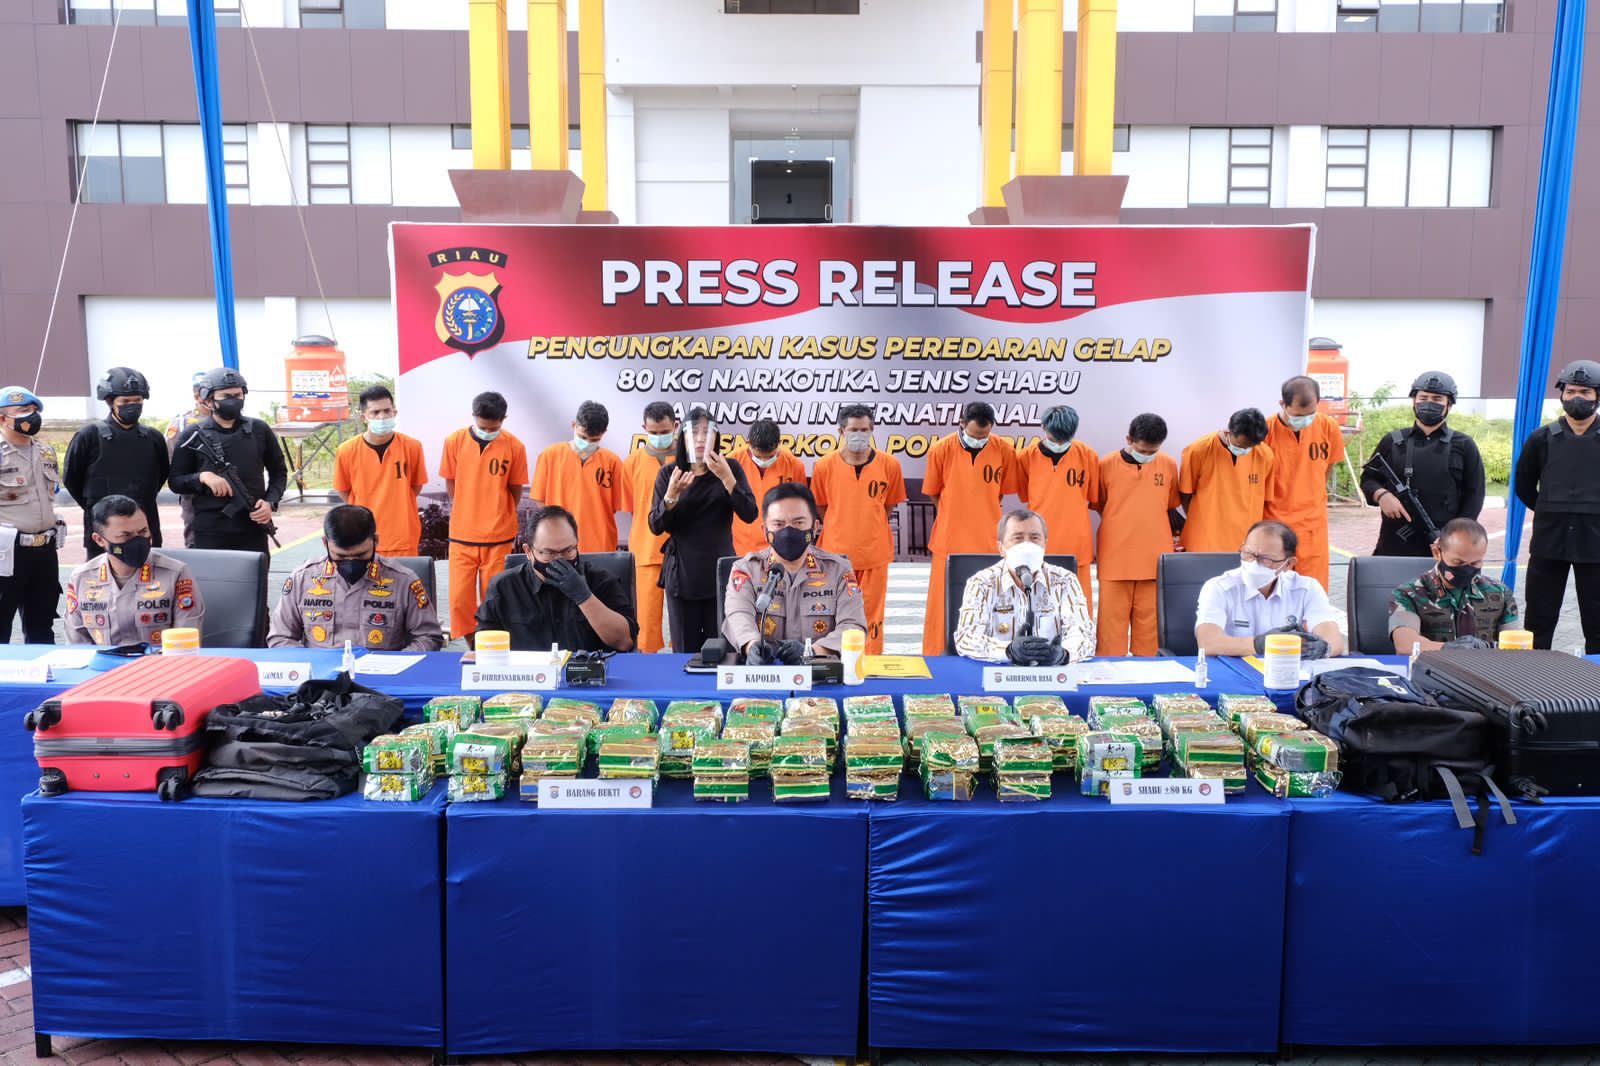 Press Release kasus peredaran narkoba, Kamis (20/1/2022) di Mapolda Riau. 